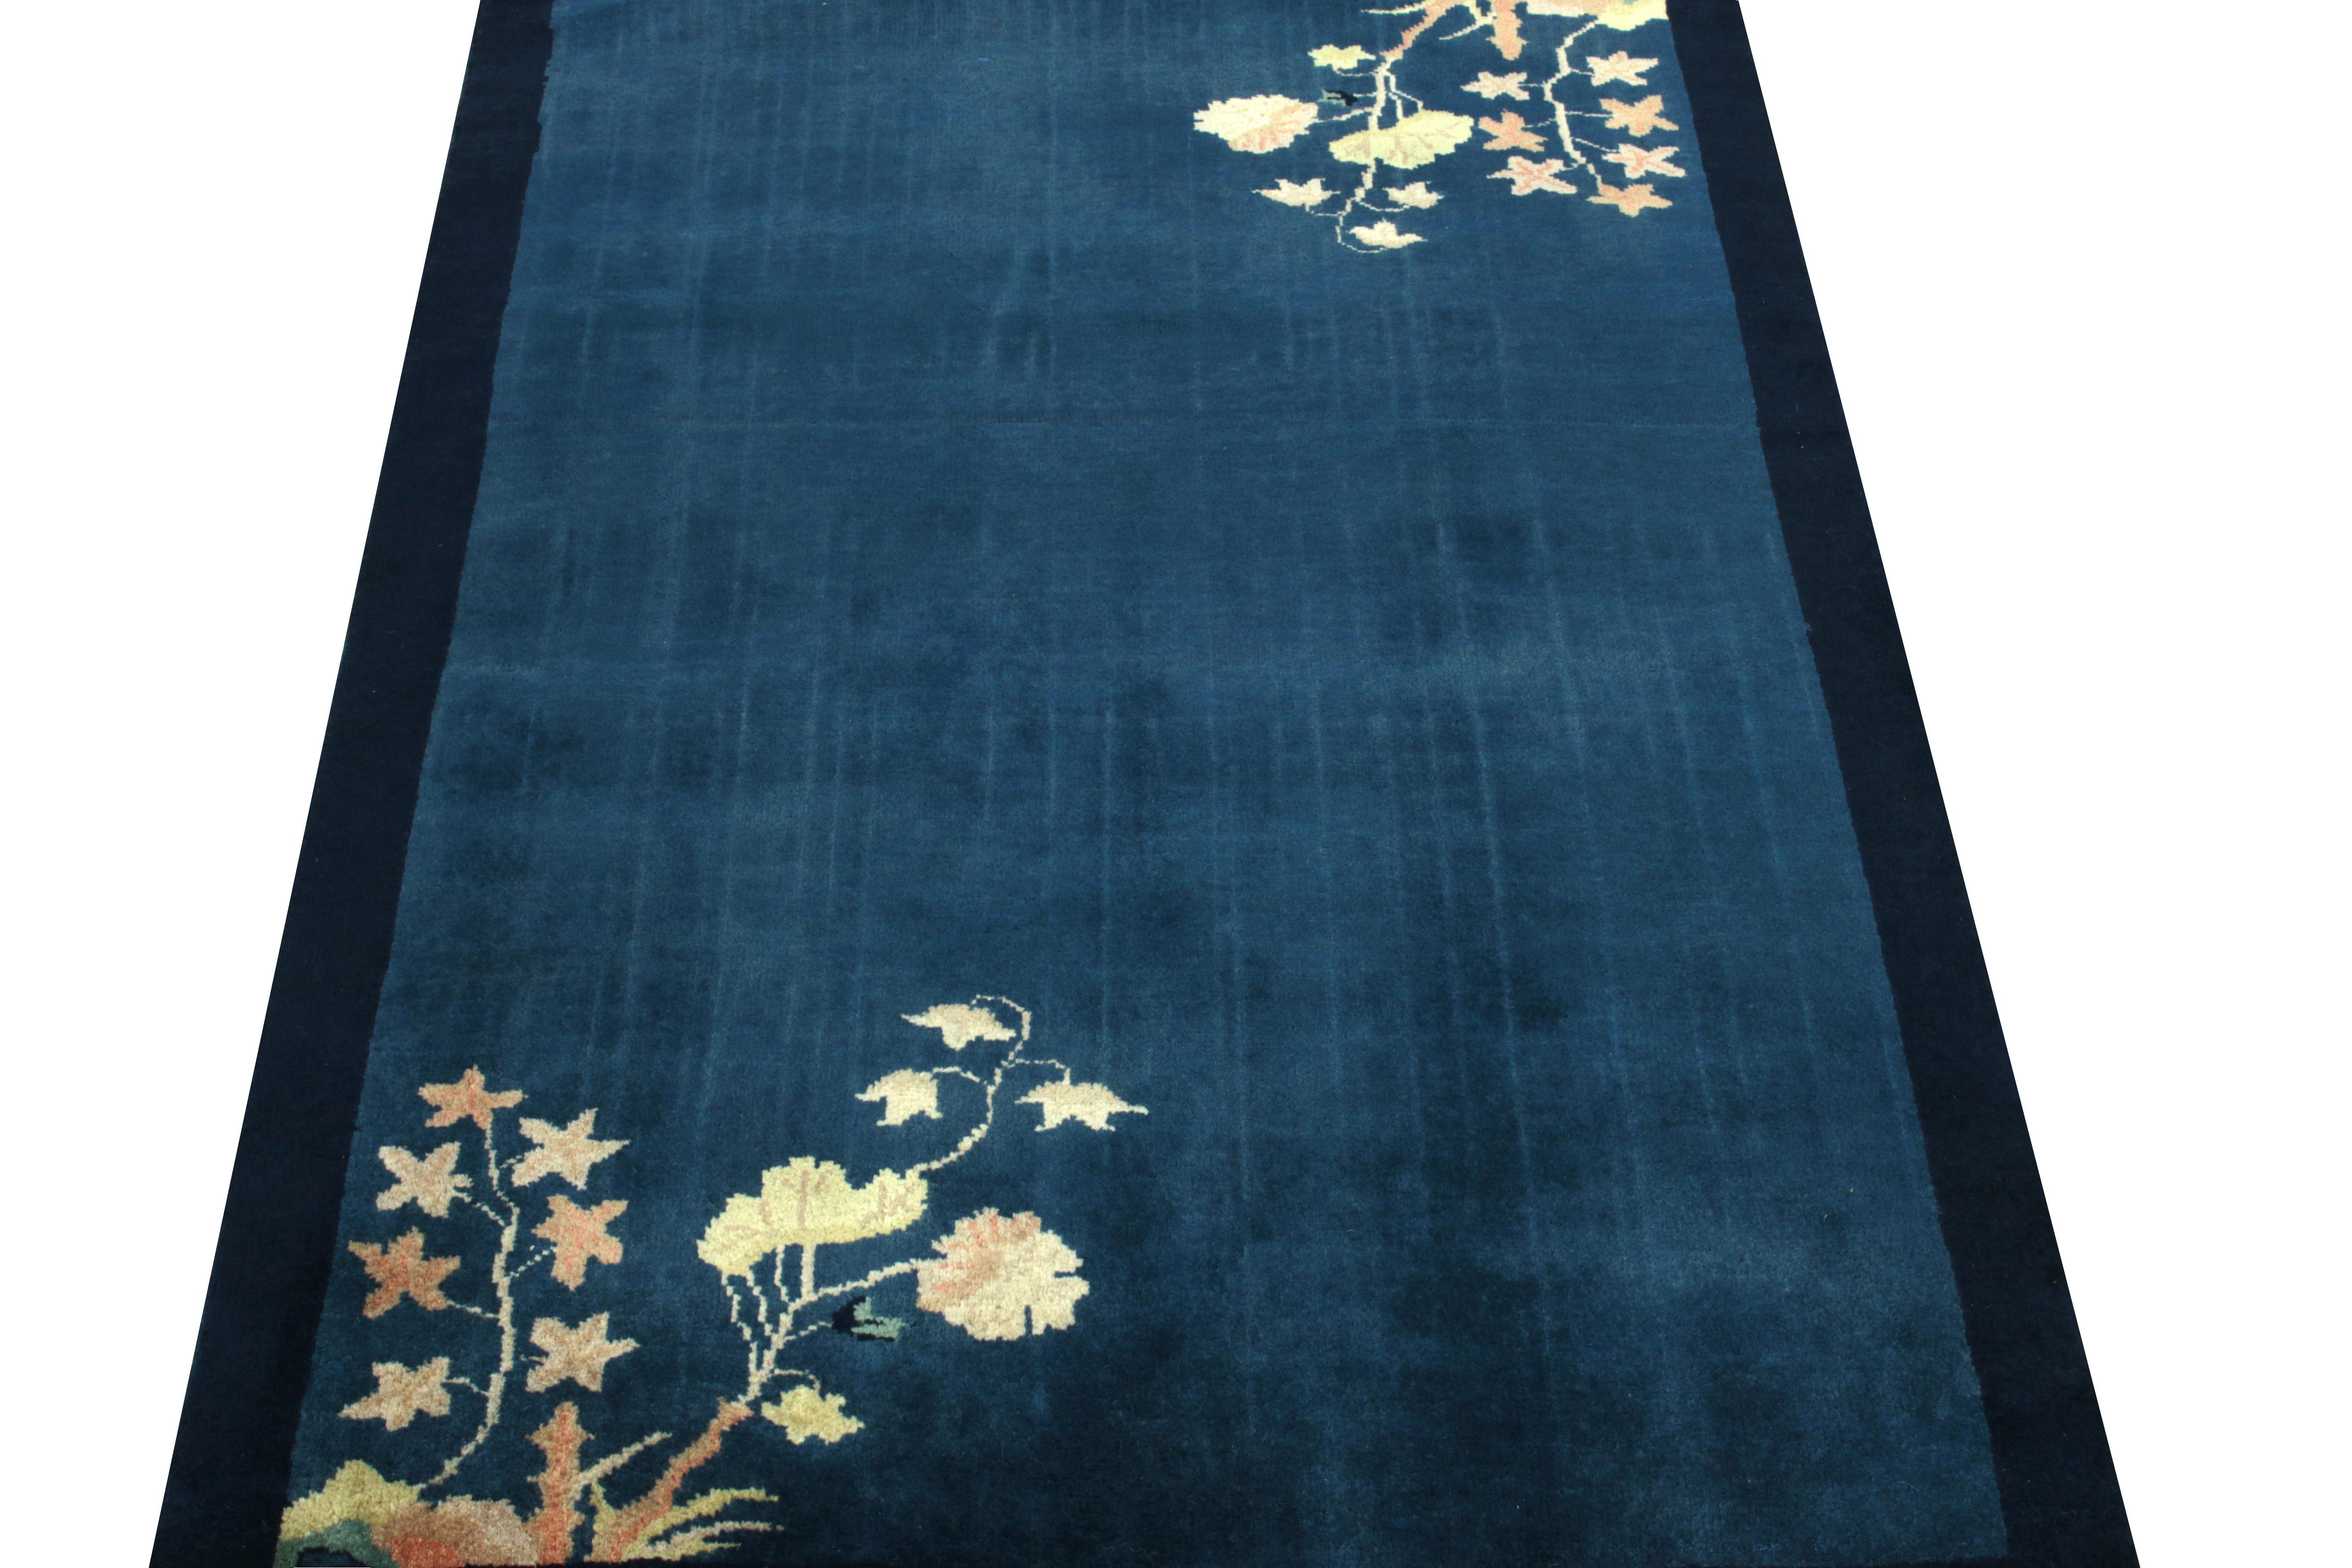 Ein chinesischer Deko-Teppich in tiefem Blau, der ein schwingendes Blumenmuster in Creme-, Pfirsich- und Grüntönen bevorzugt, beobachtet hell-dunkle Flecken, die einen freundlichen Boden für das Spiel des Lichts auf einem so gesunden Flor bilden.